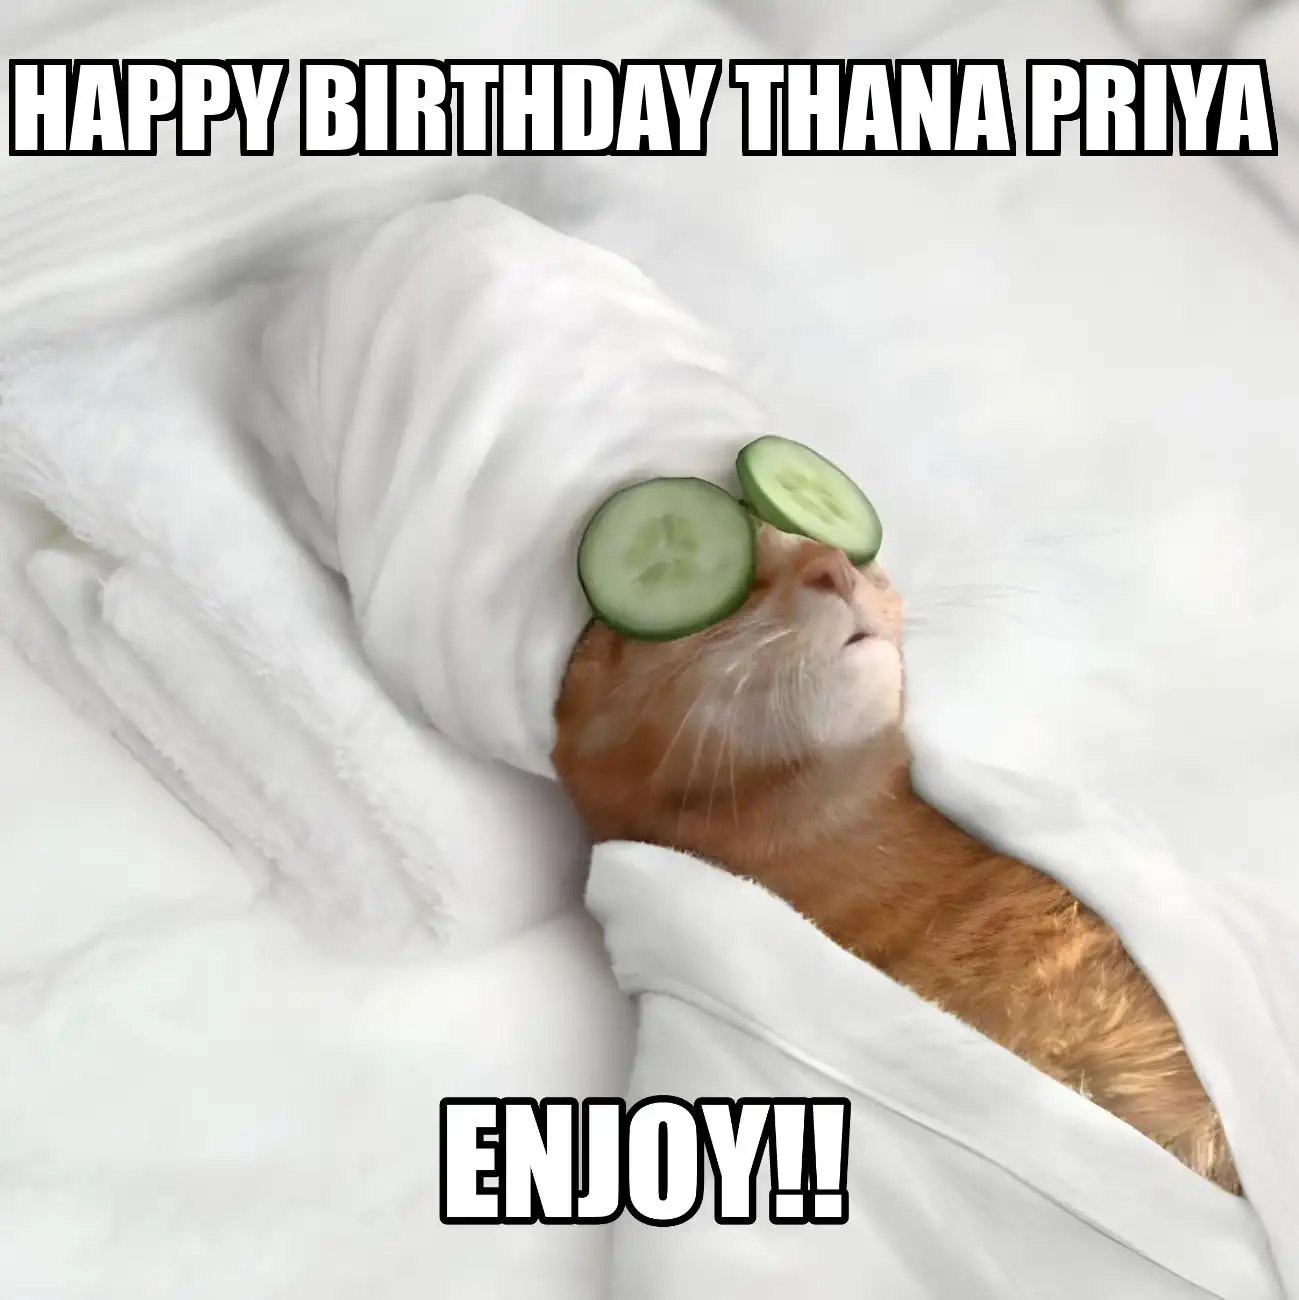 Happy Birthday Thana priya Enjoy Cat Meme